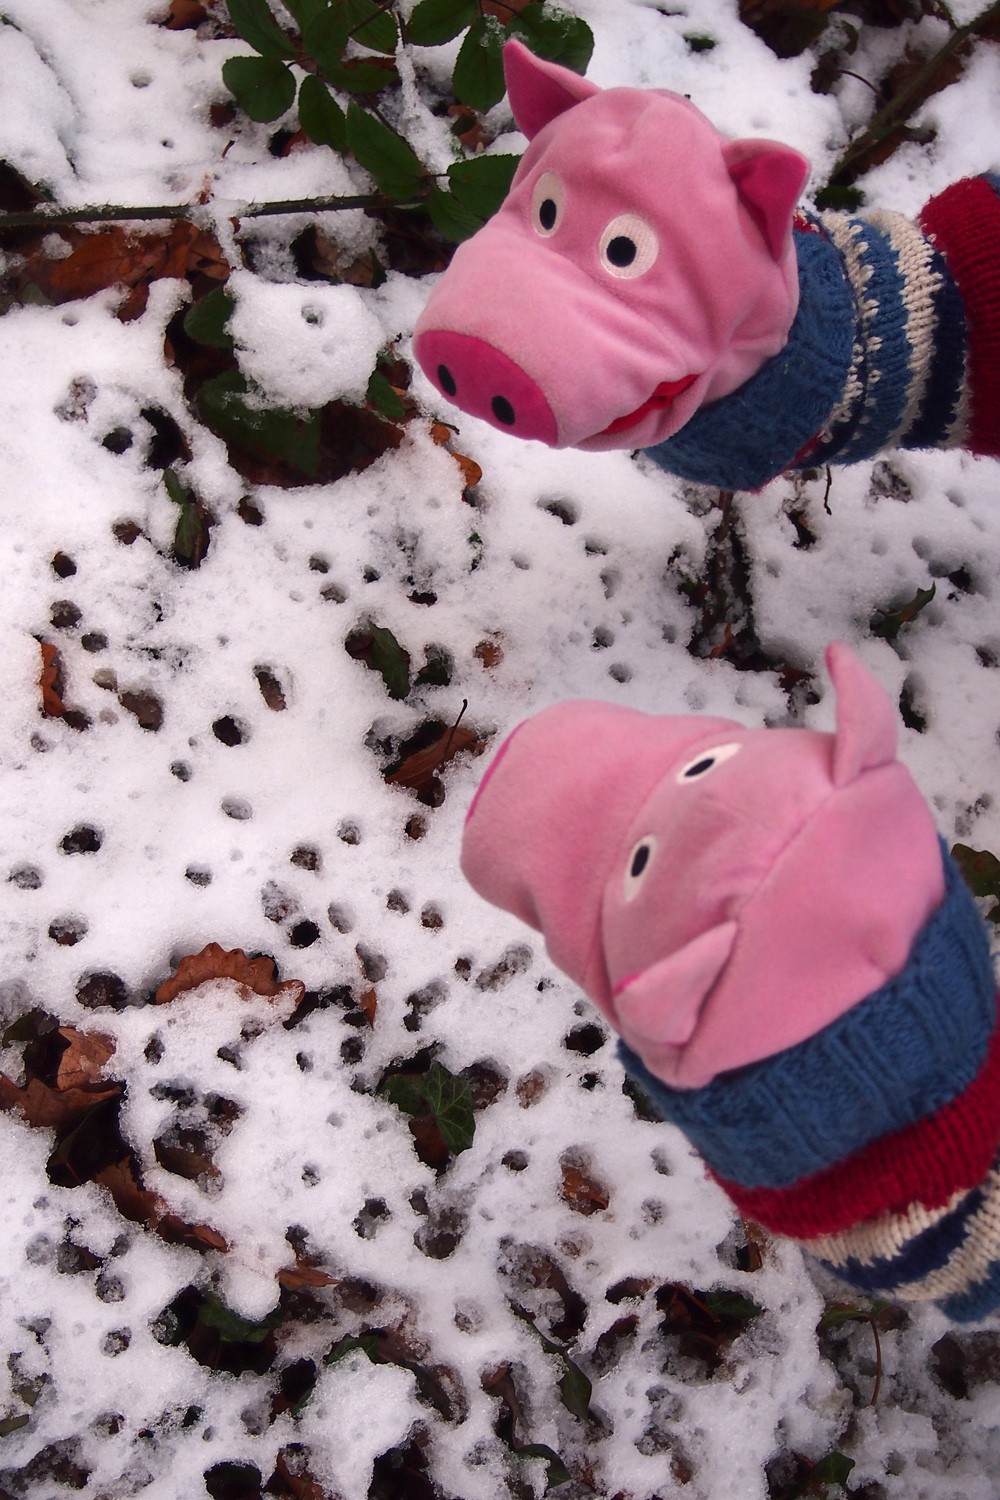 Es hat geschneit! Die Schweine bewundern den ersten Schnee...